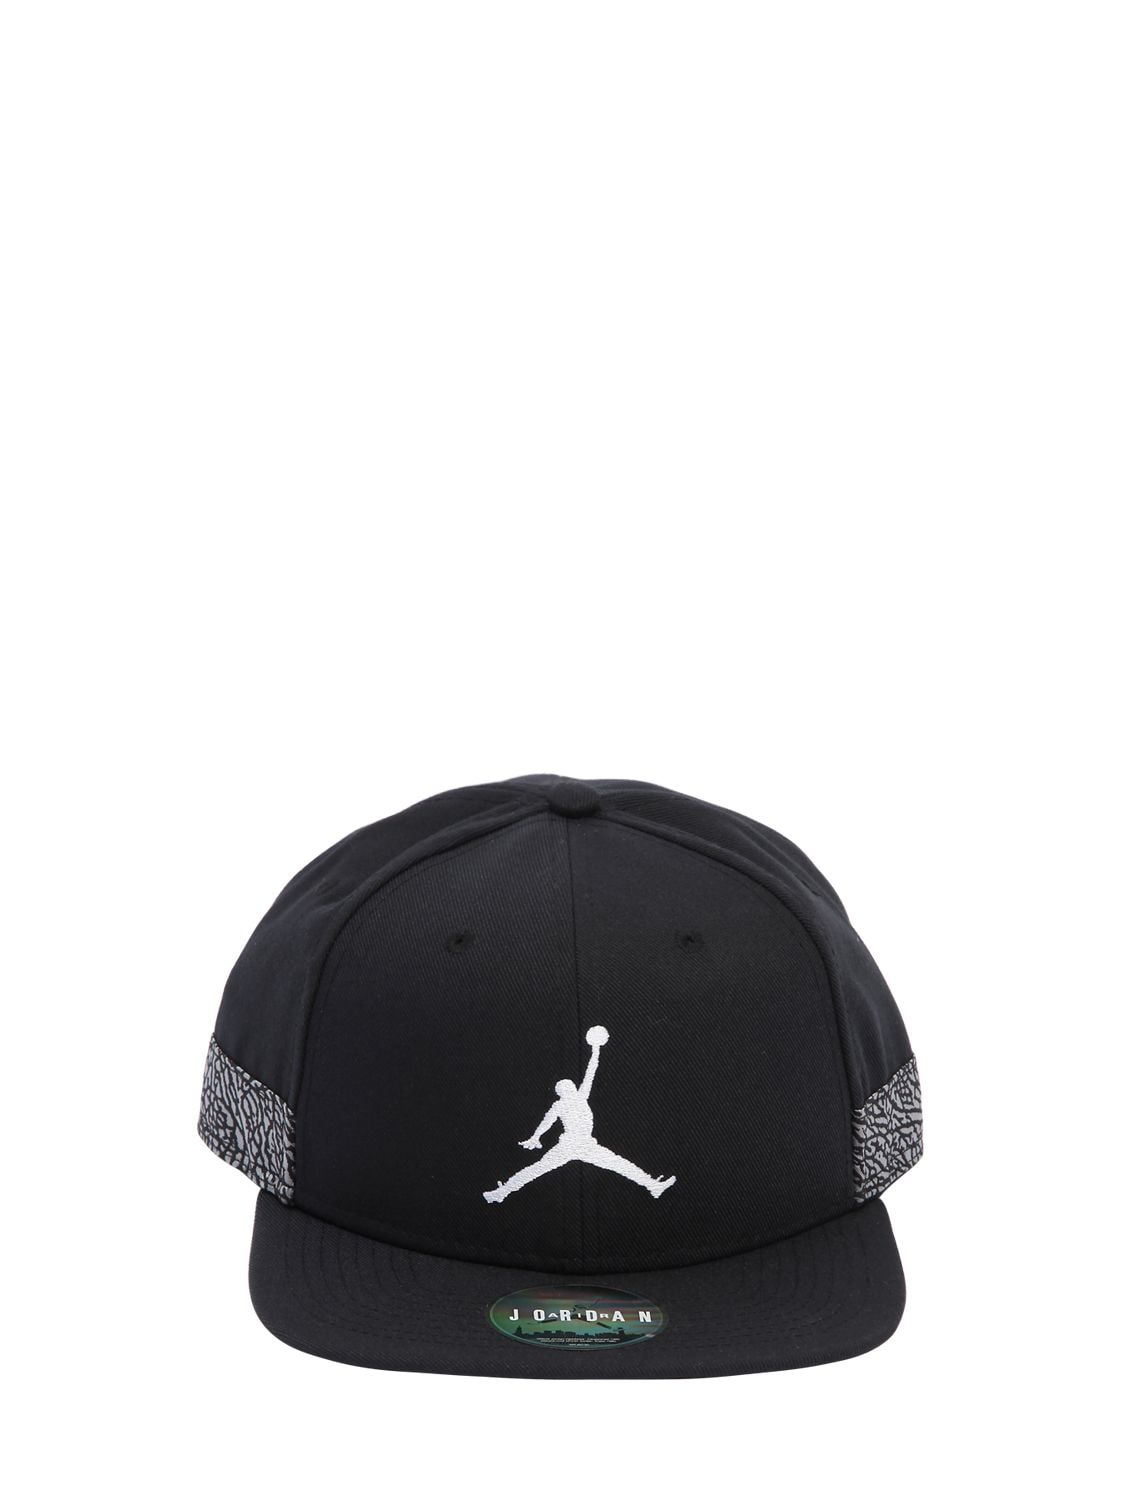 Nike Air Jordan Jumpman Pro Aj 3 Hat In Black